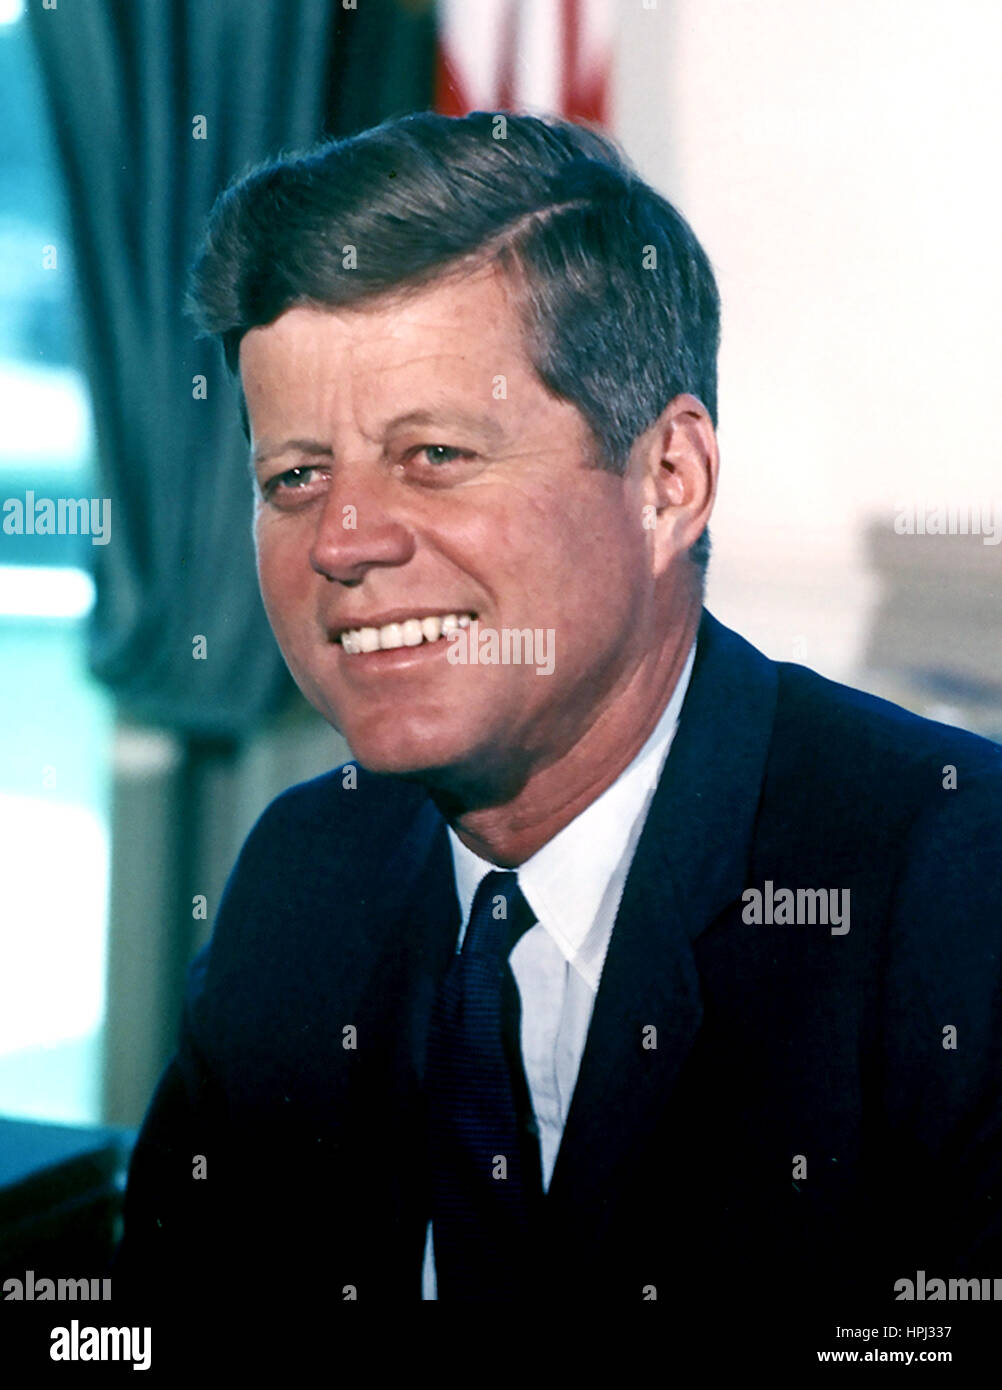 JOHN F. KENNEDY como 35ª Presidne de los Estados Unidos en 1963. Foto: Cecil Stoughton/funcionario de la Casa Blanca Foto de stock